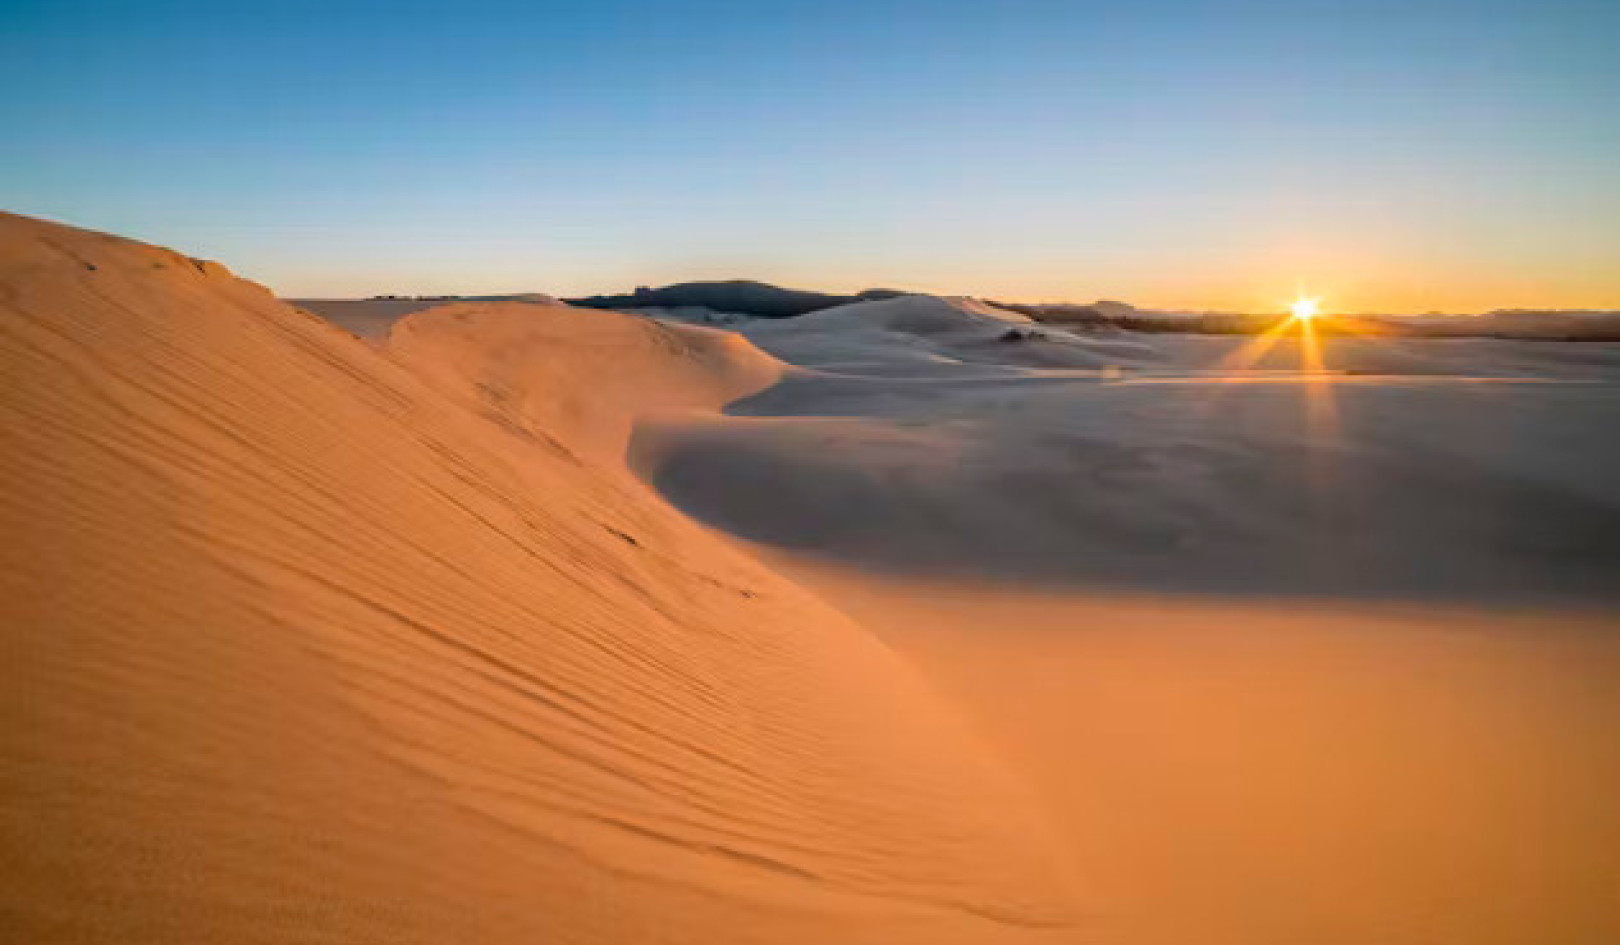 Dune이 환경 운동과 생태학의 미래를 형성한 방법